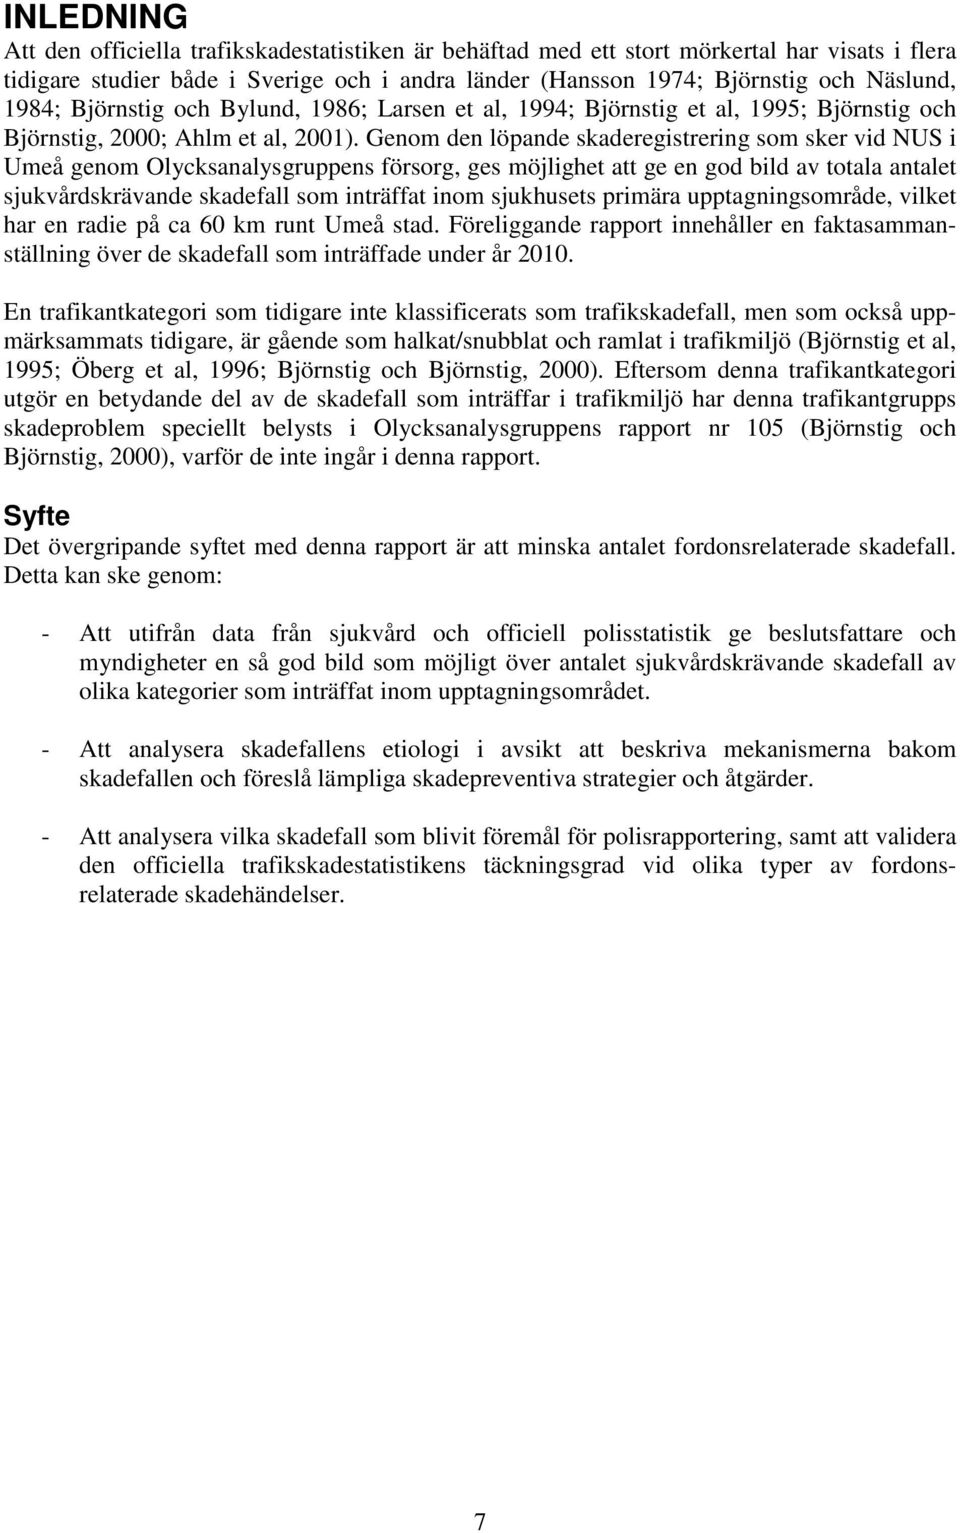 Genom den löpande skaderegistrering som sker vid NUS i Umeå genom Olycksanalysgruppens försorg, ges möjlighet att ge en god bild av totala antalet sjukvårdskrävande skadefall som inträffat inom